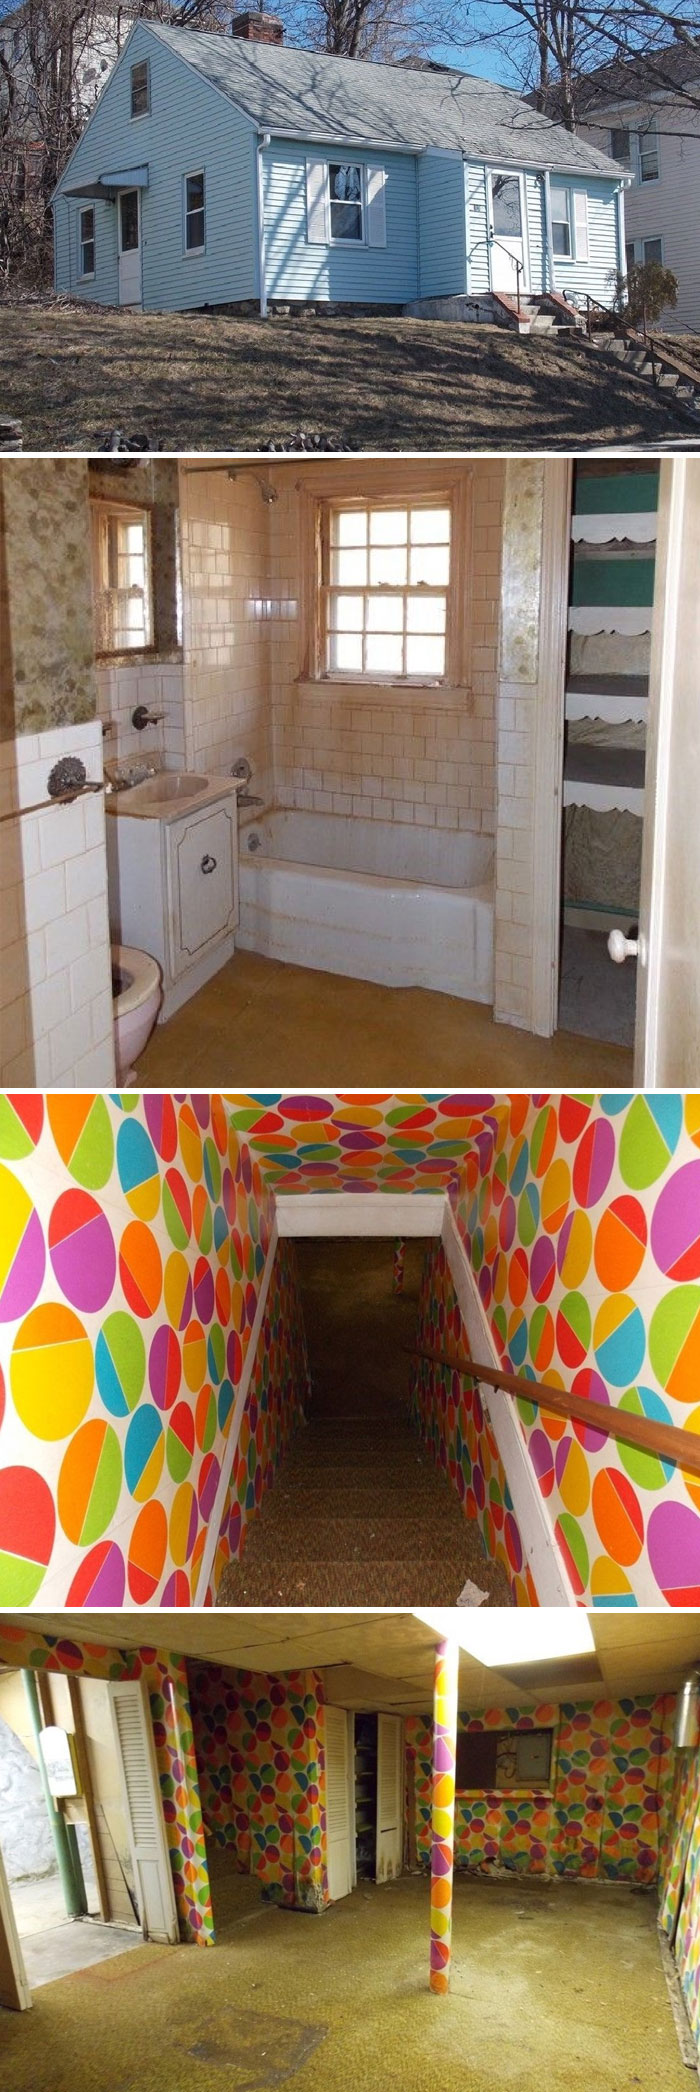 1 habitación, 1 baño y 1 portal al infierno de los payasos